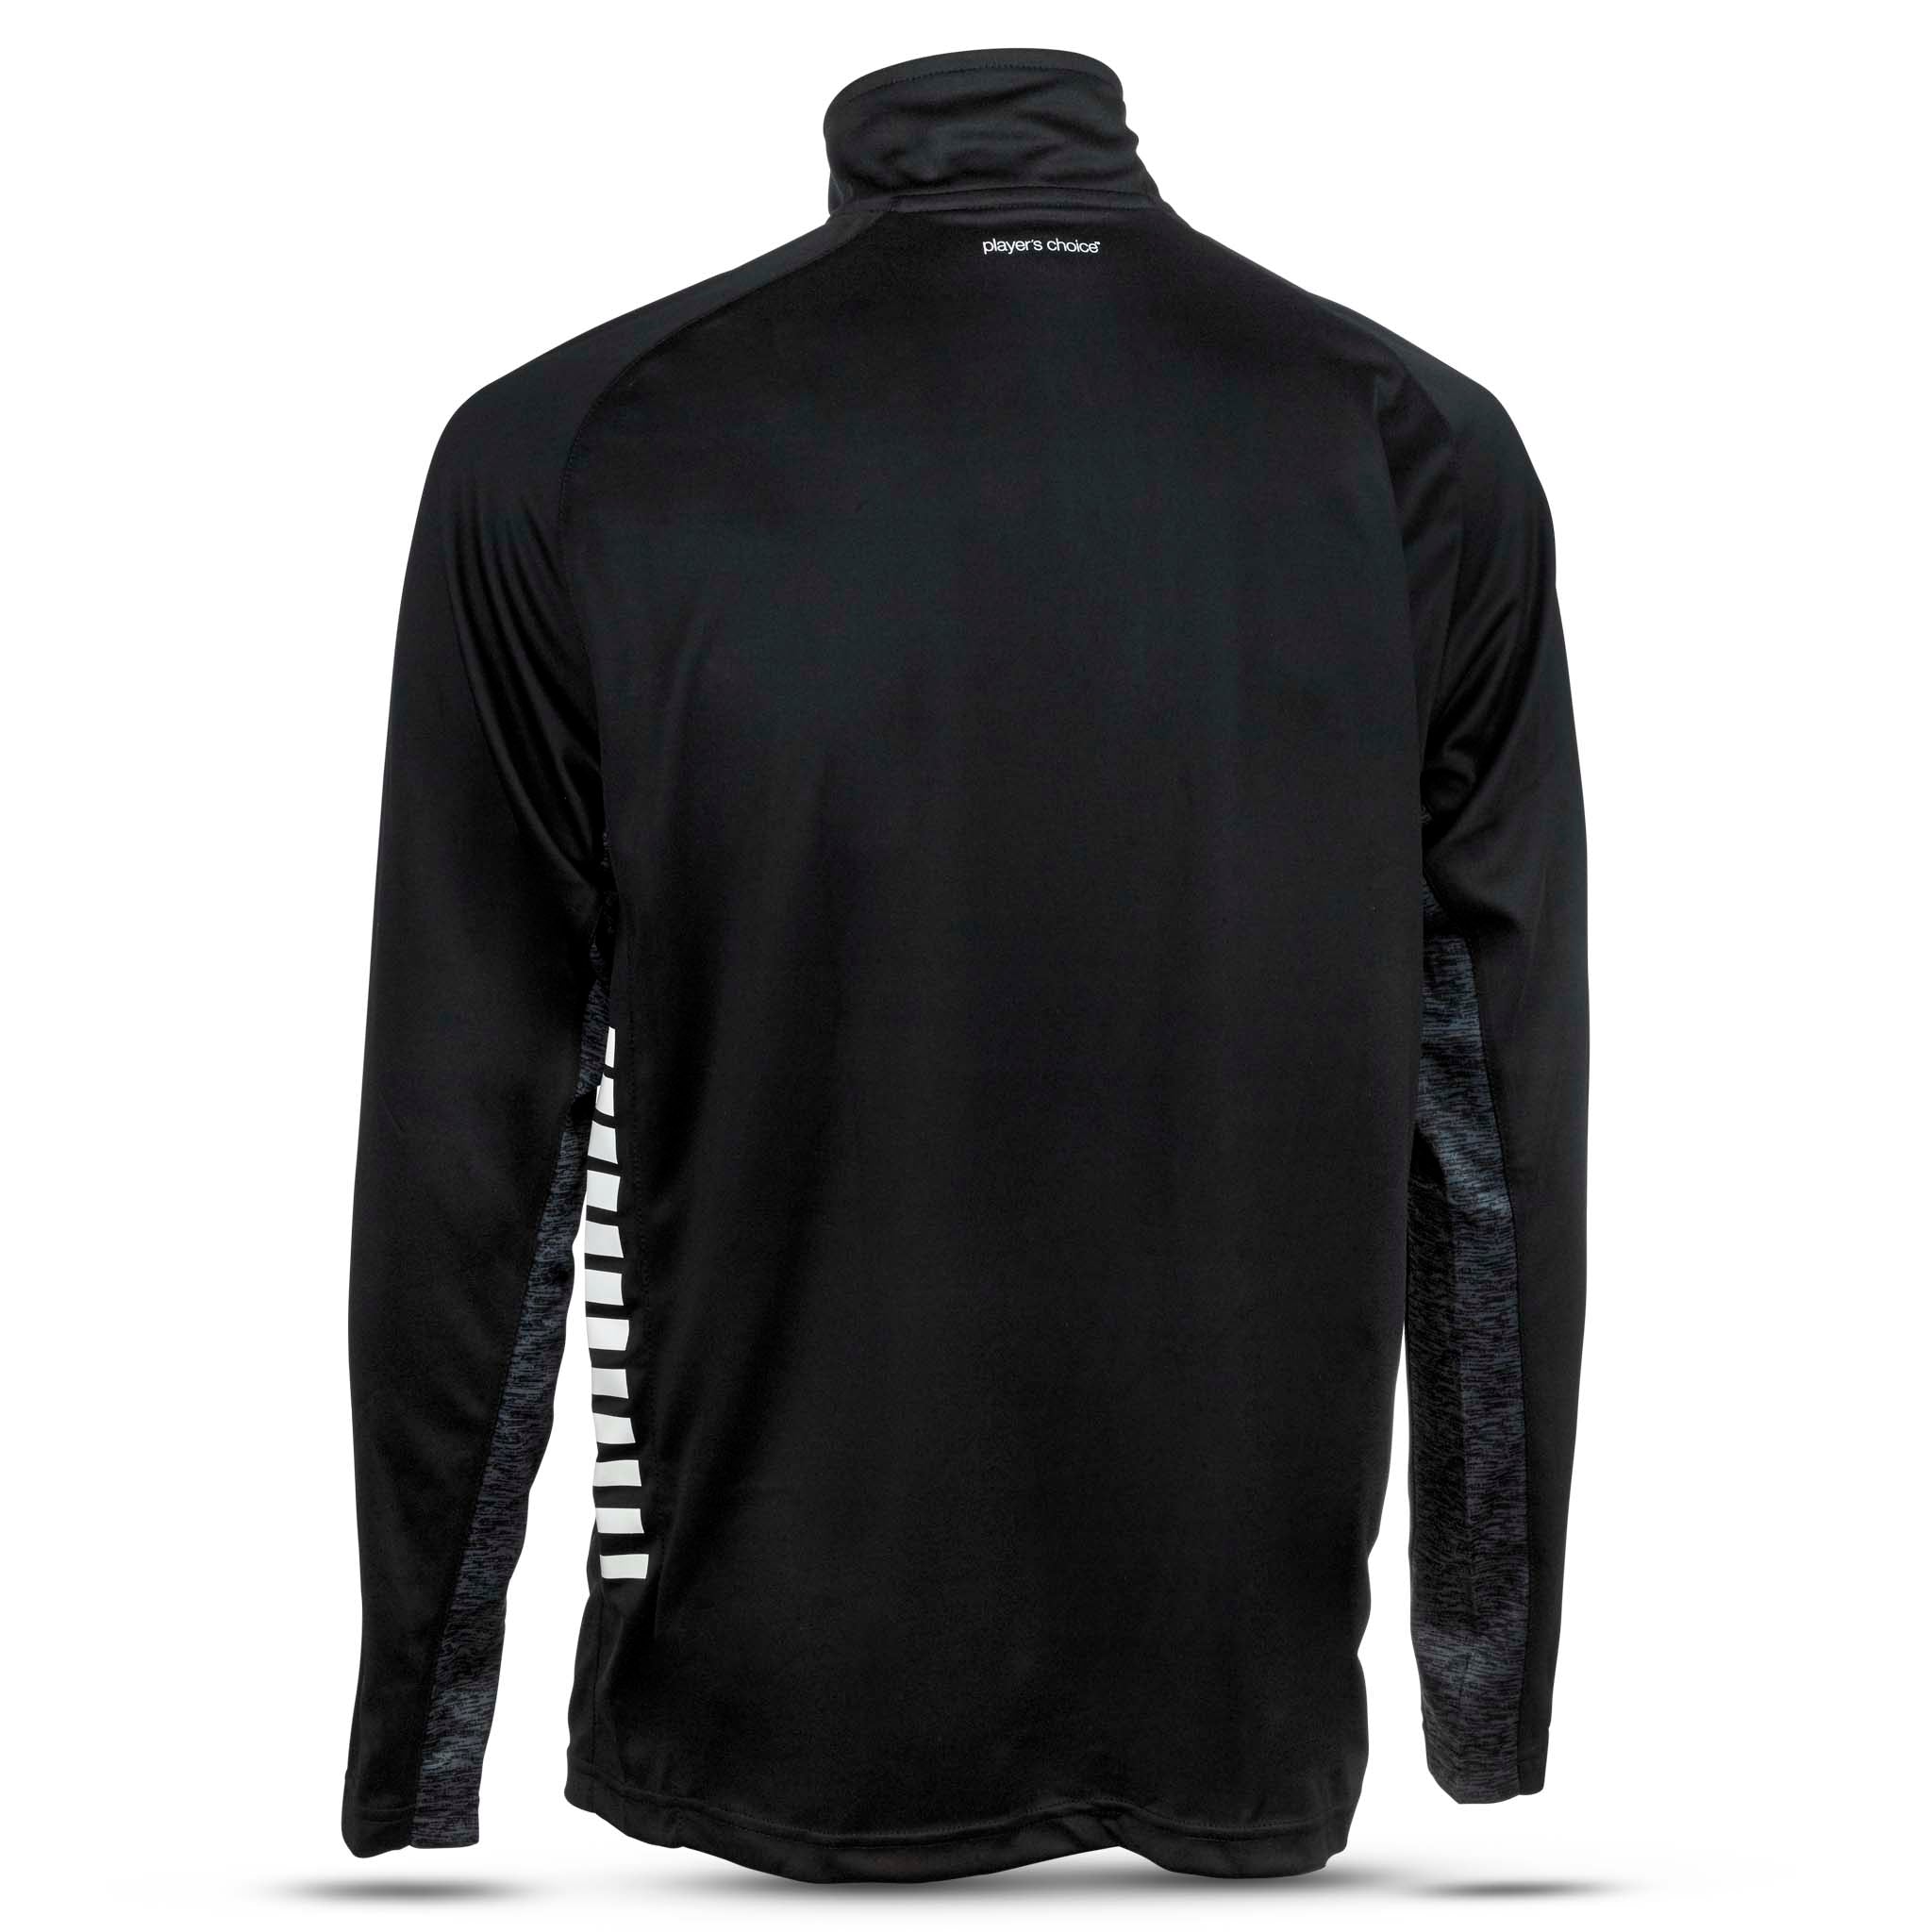 Spain Träning sweatshirt 1/2 zip - Barn #färg_svart